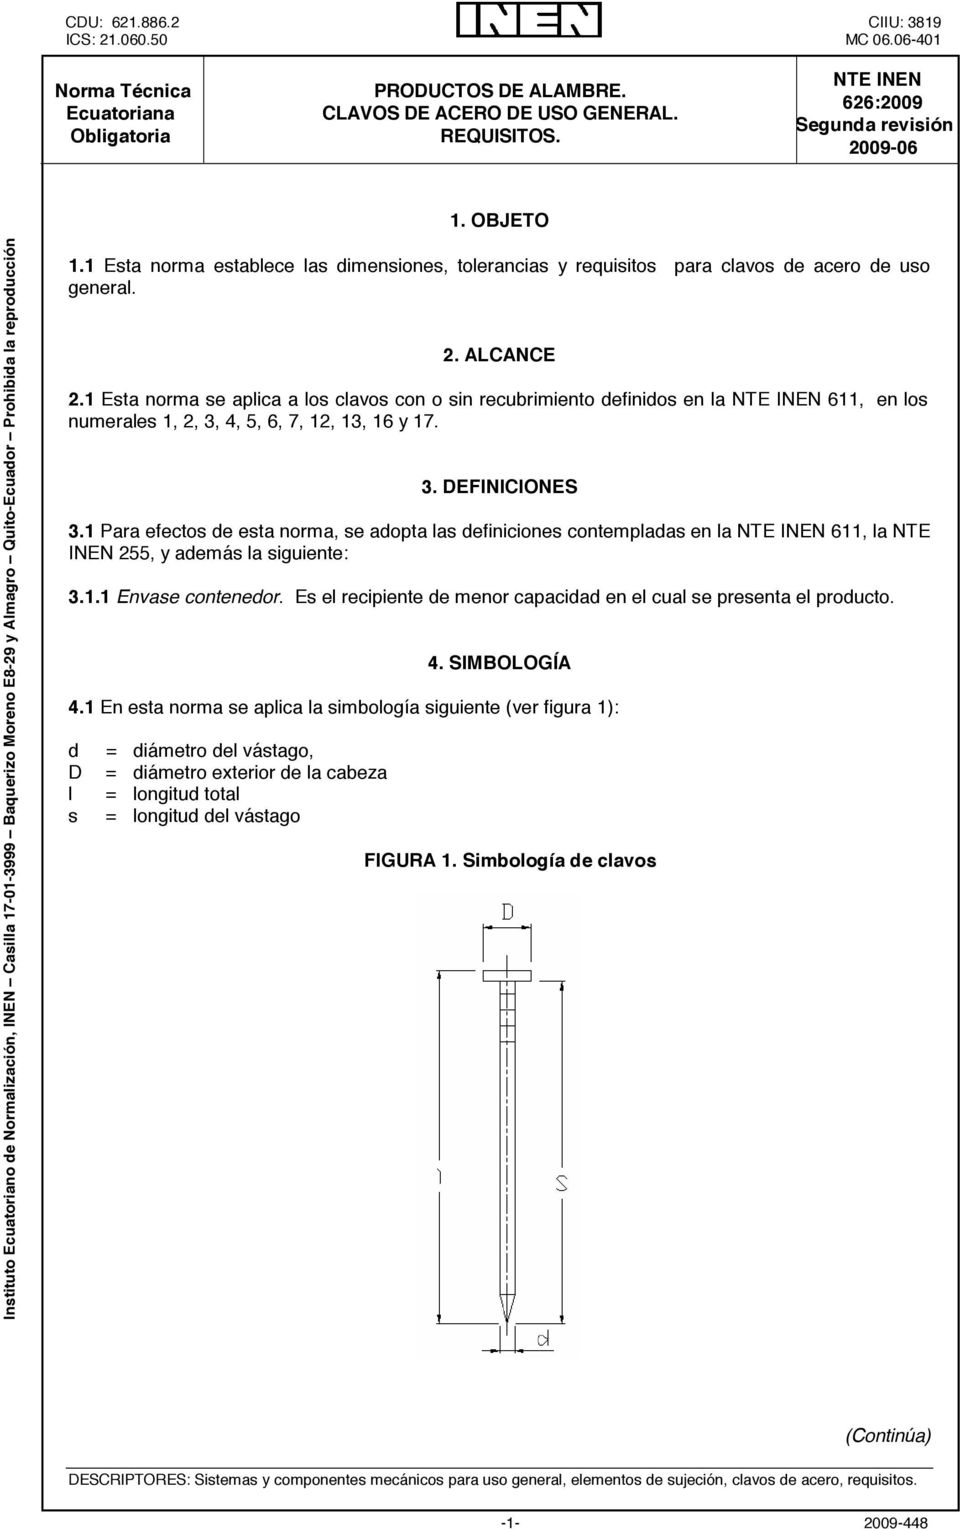 1 Esta norma establece las dimensiones, tolerancias y requisitos para clavos de acero de uso general. 2. ALCANCE 2.